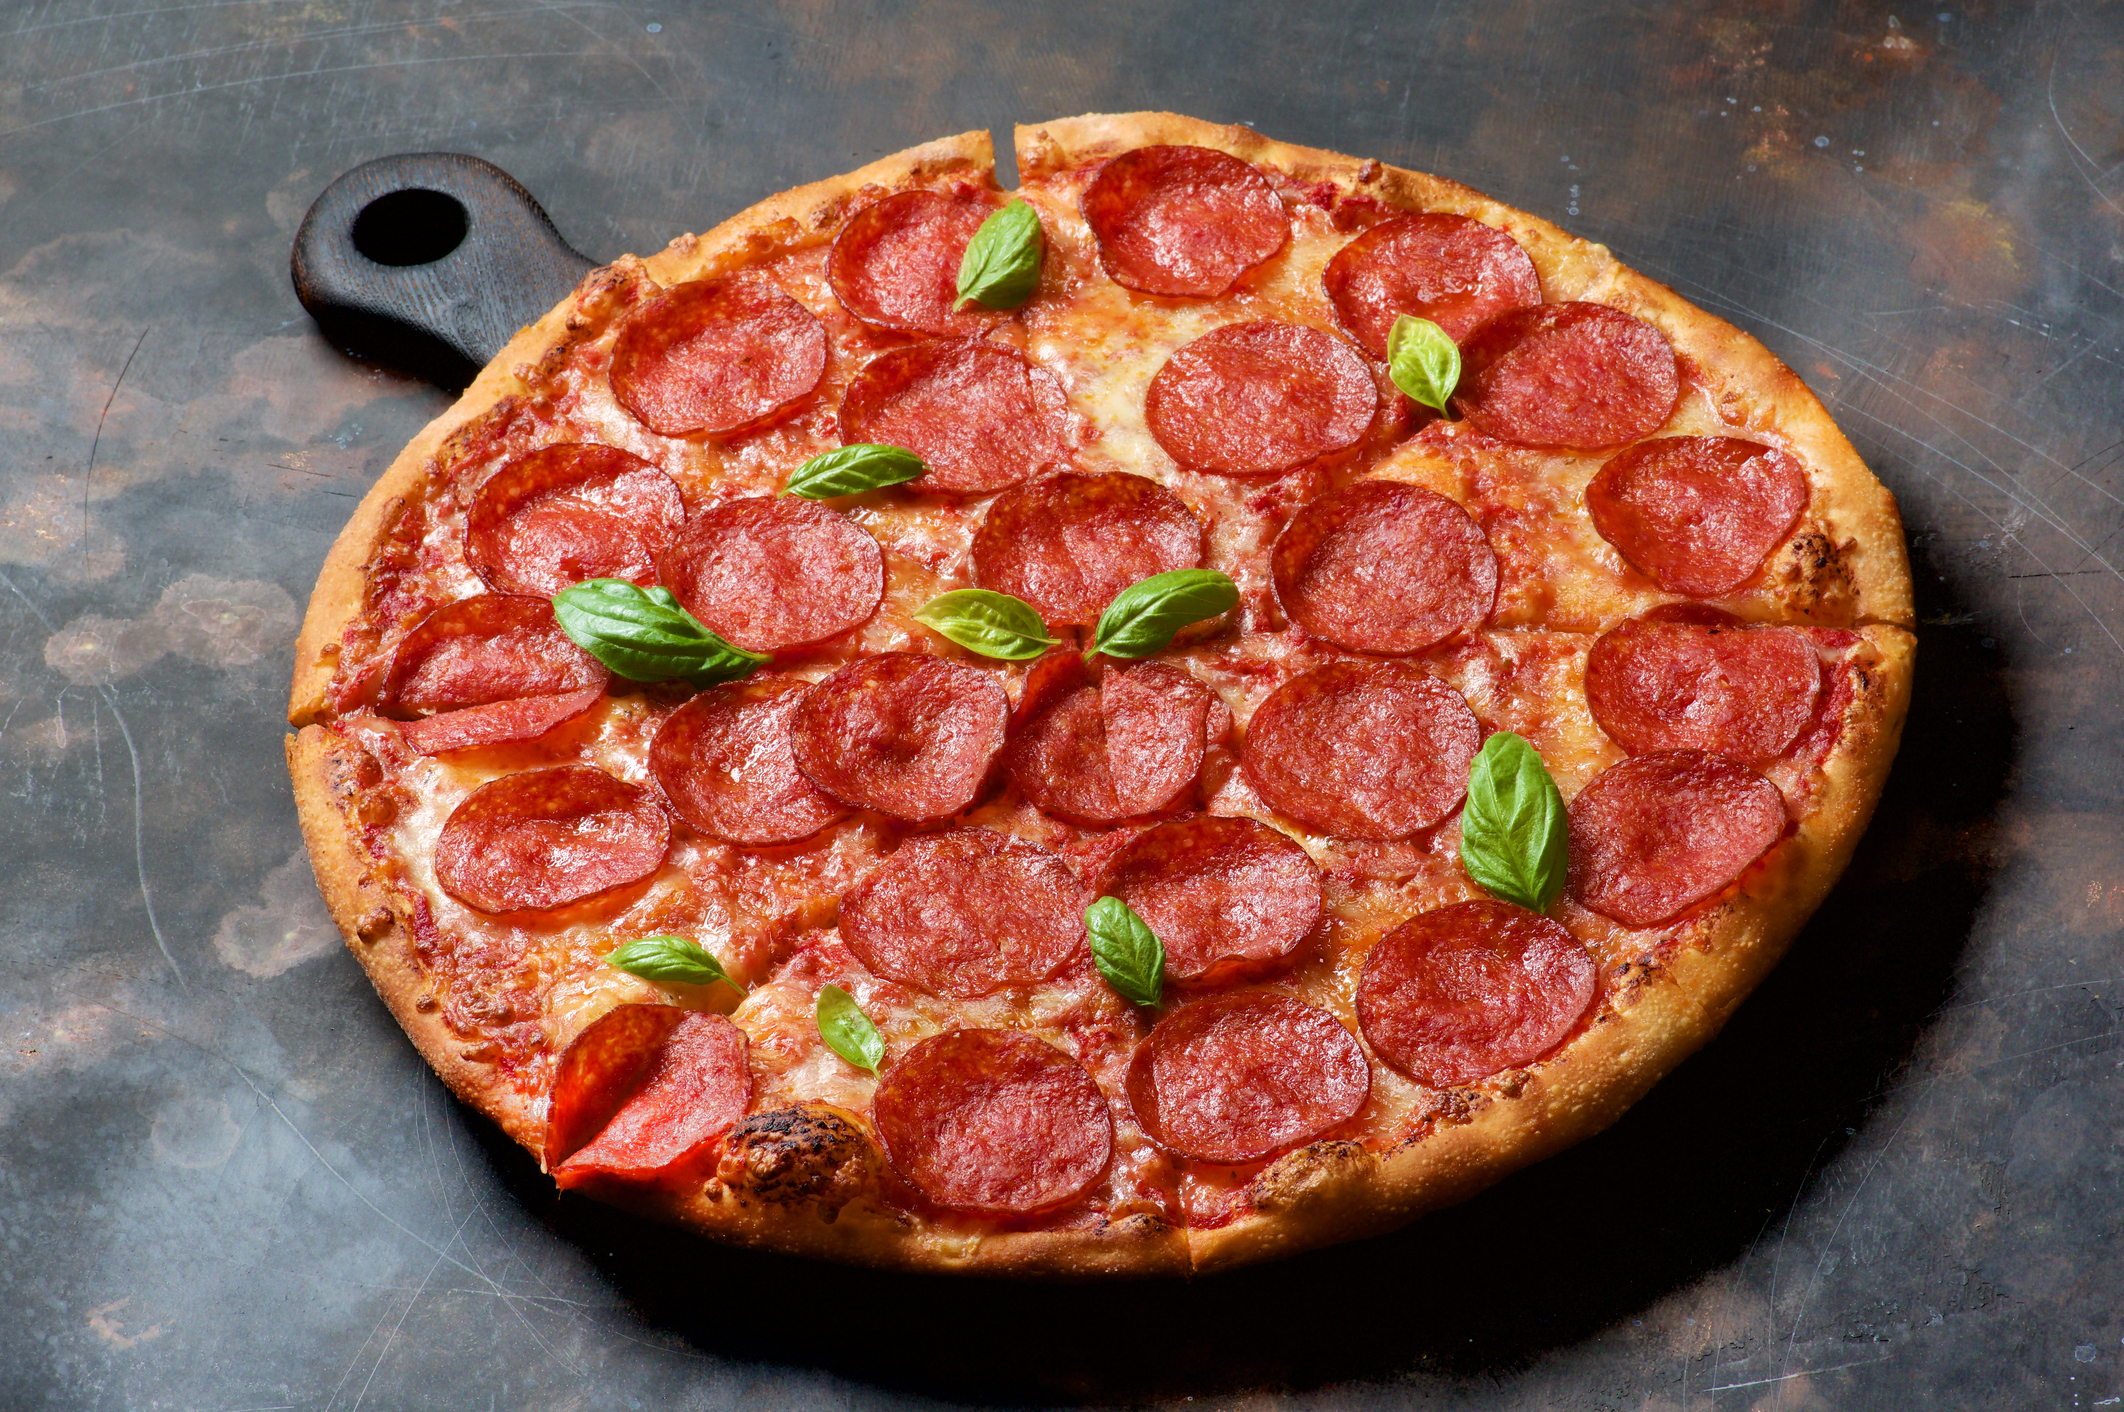 Házi serpenyős pizza: nem lehet elrontani, és nagyon gyorsan elkészül -  Blikk Rúzs